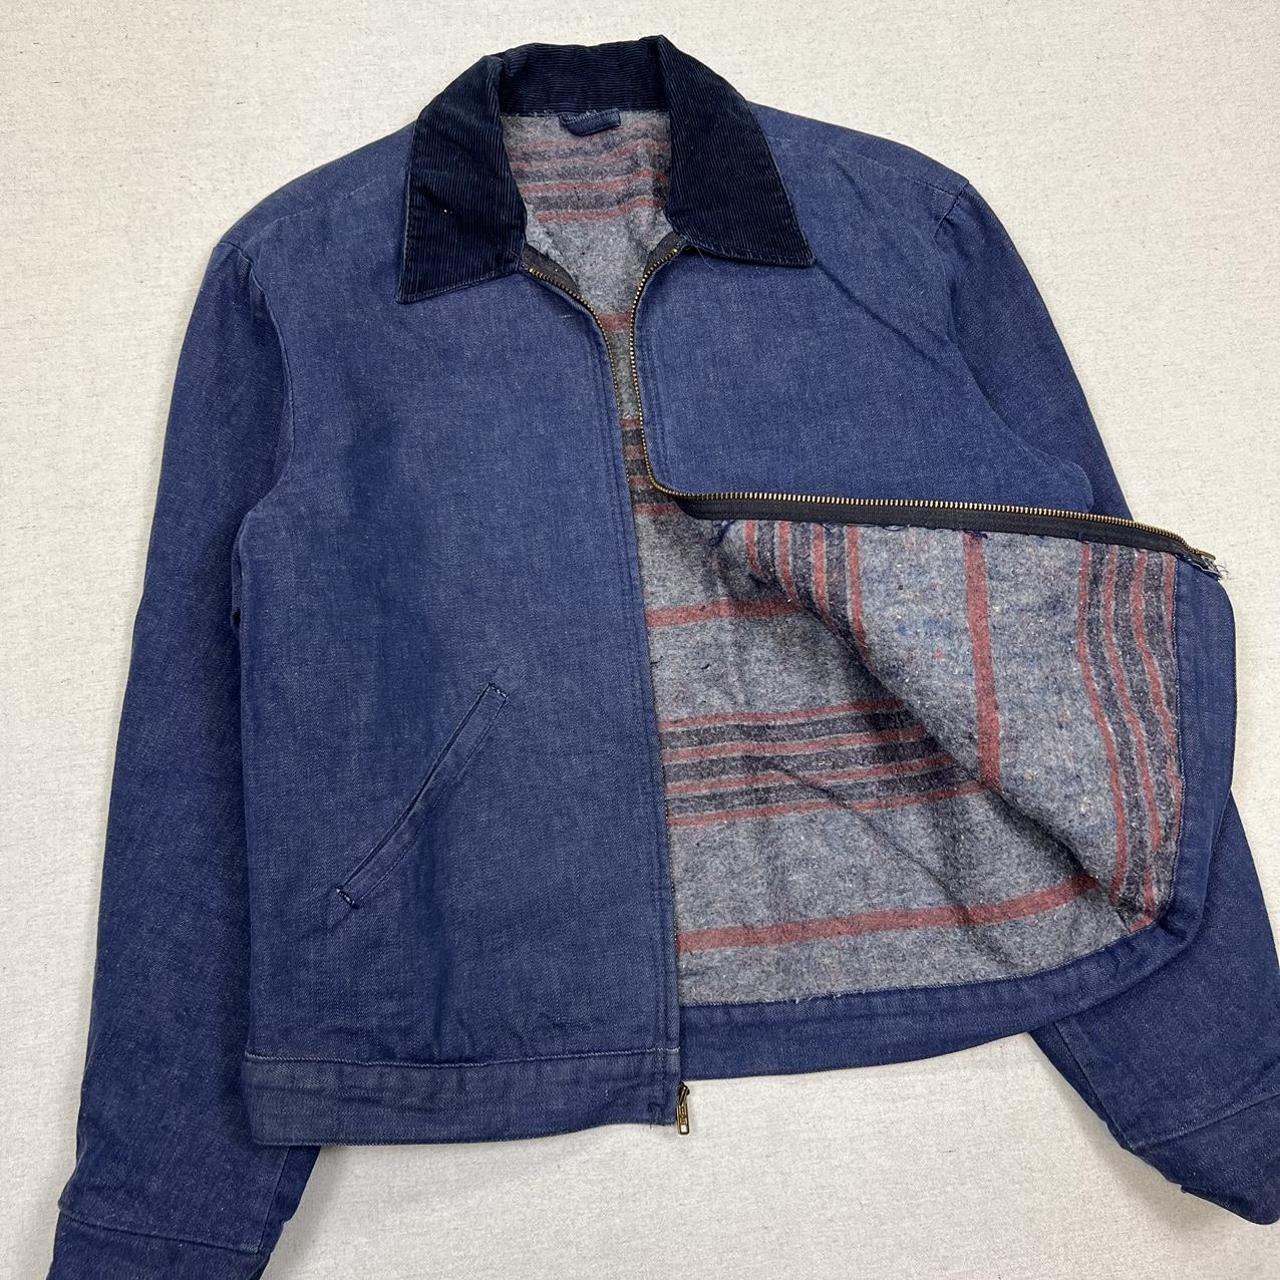 Vintage 70s denim Detroit work jacket Jean jacket... - Depop